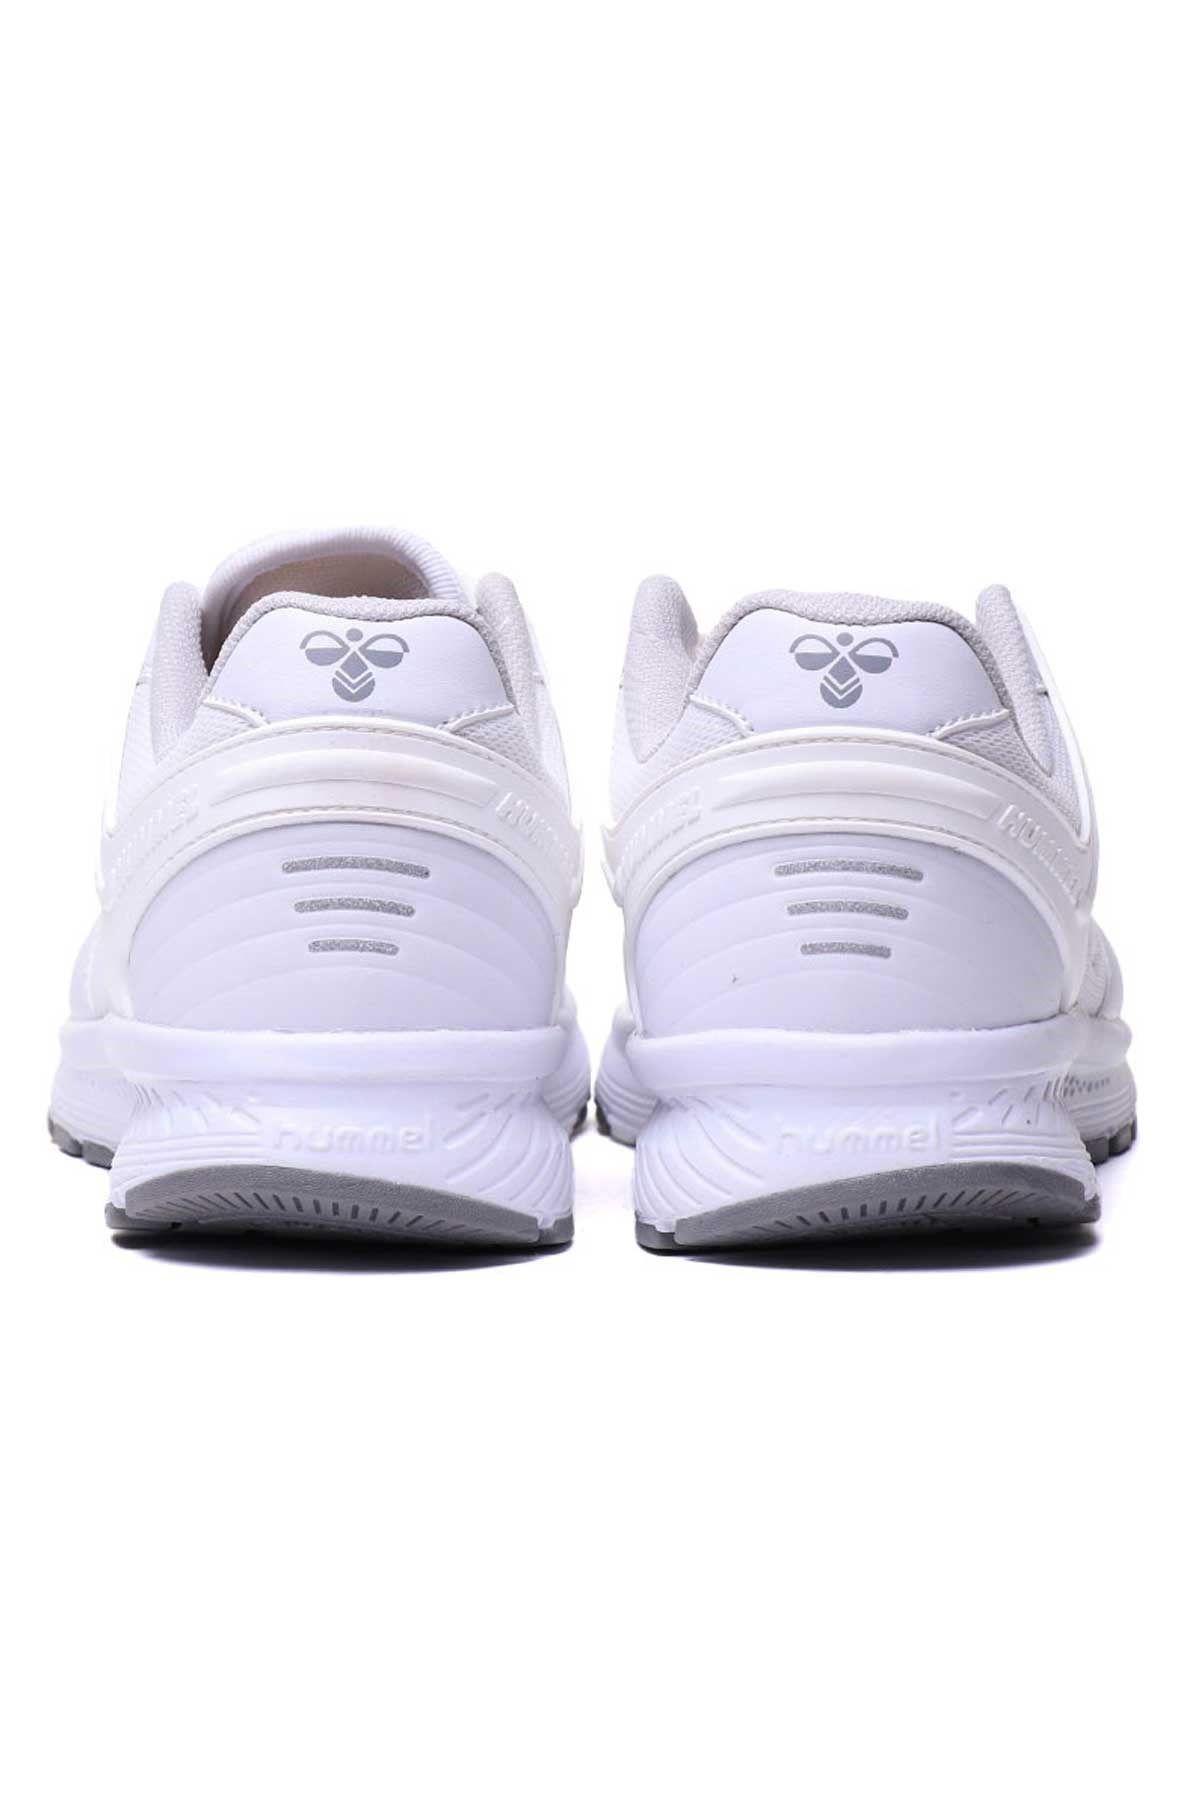 Hummel Hml Porter X Erkek Beyaz Spor Ayakkabı - 900278-9001